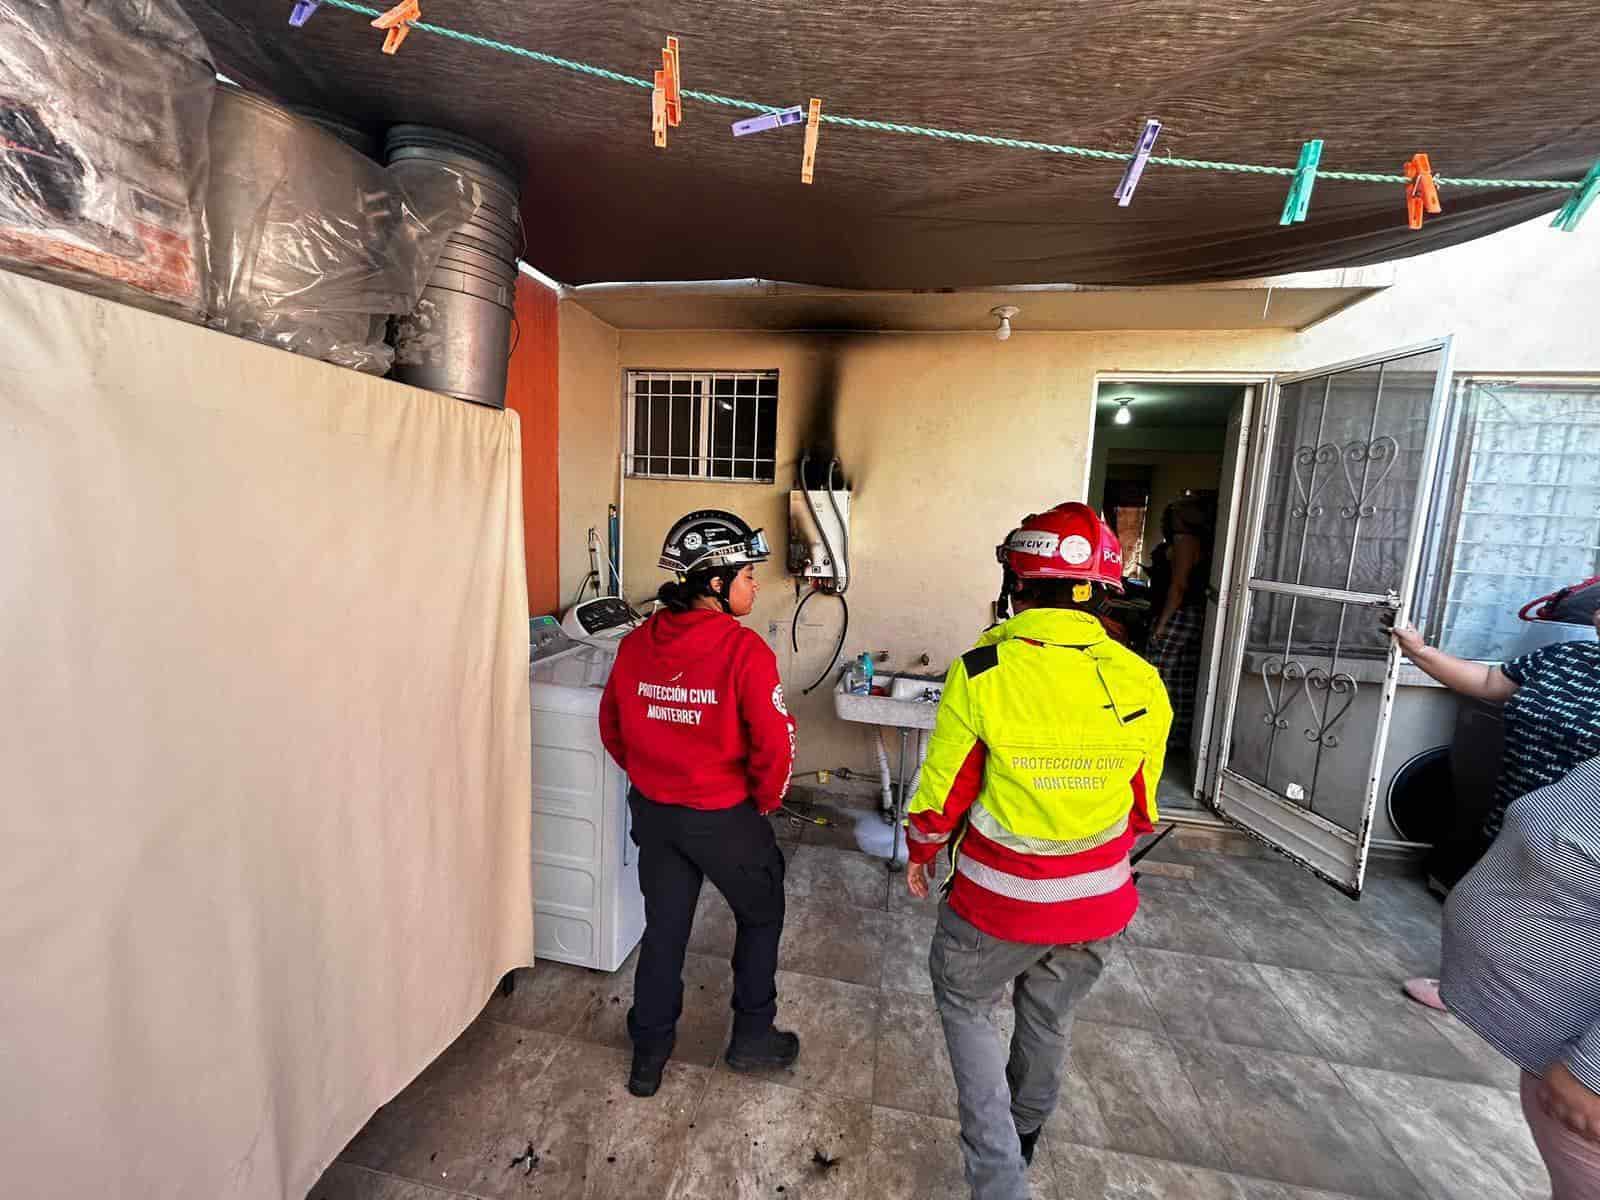 Un conato de incendio en el boiler de paso en un domicilio, alarmó a los habitantes del lugar que solicitaron la ayuda de las autoridades, la tarde de ayer en la Colonia Valle de Infonavit, al poniente del municipio de Monterrey.